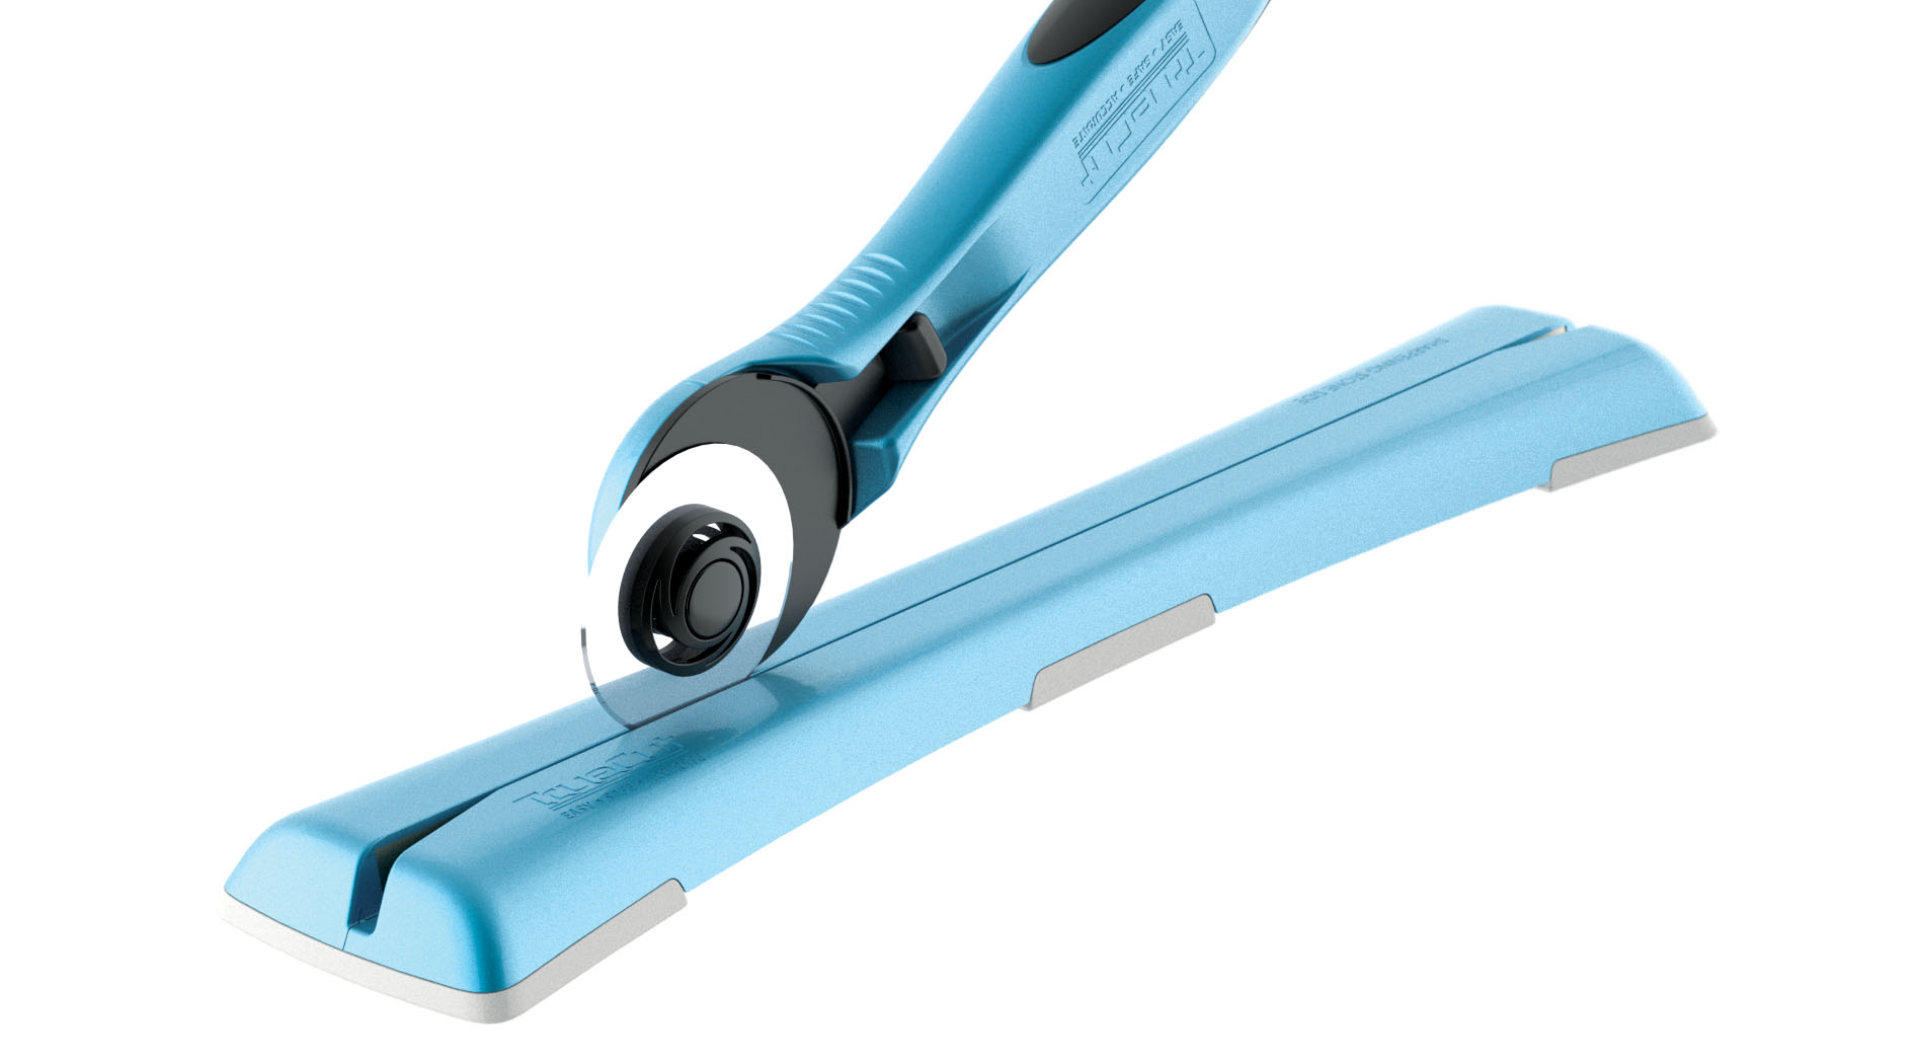 Dual Rotary Blade Sharpener/45mm sharpener/twist n' sharpen/restore sharp  edge to your rotary blades/#104